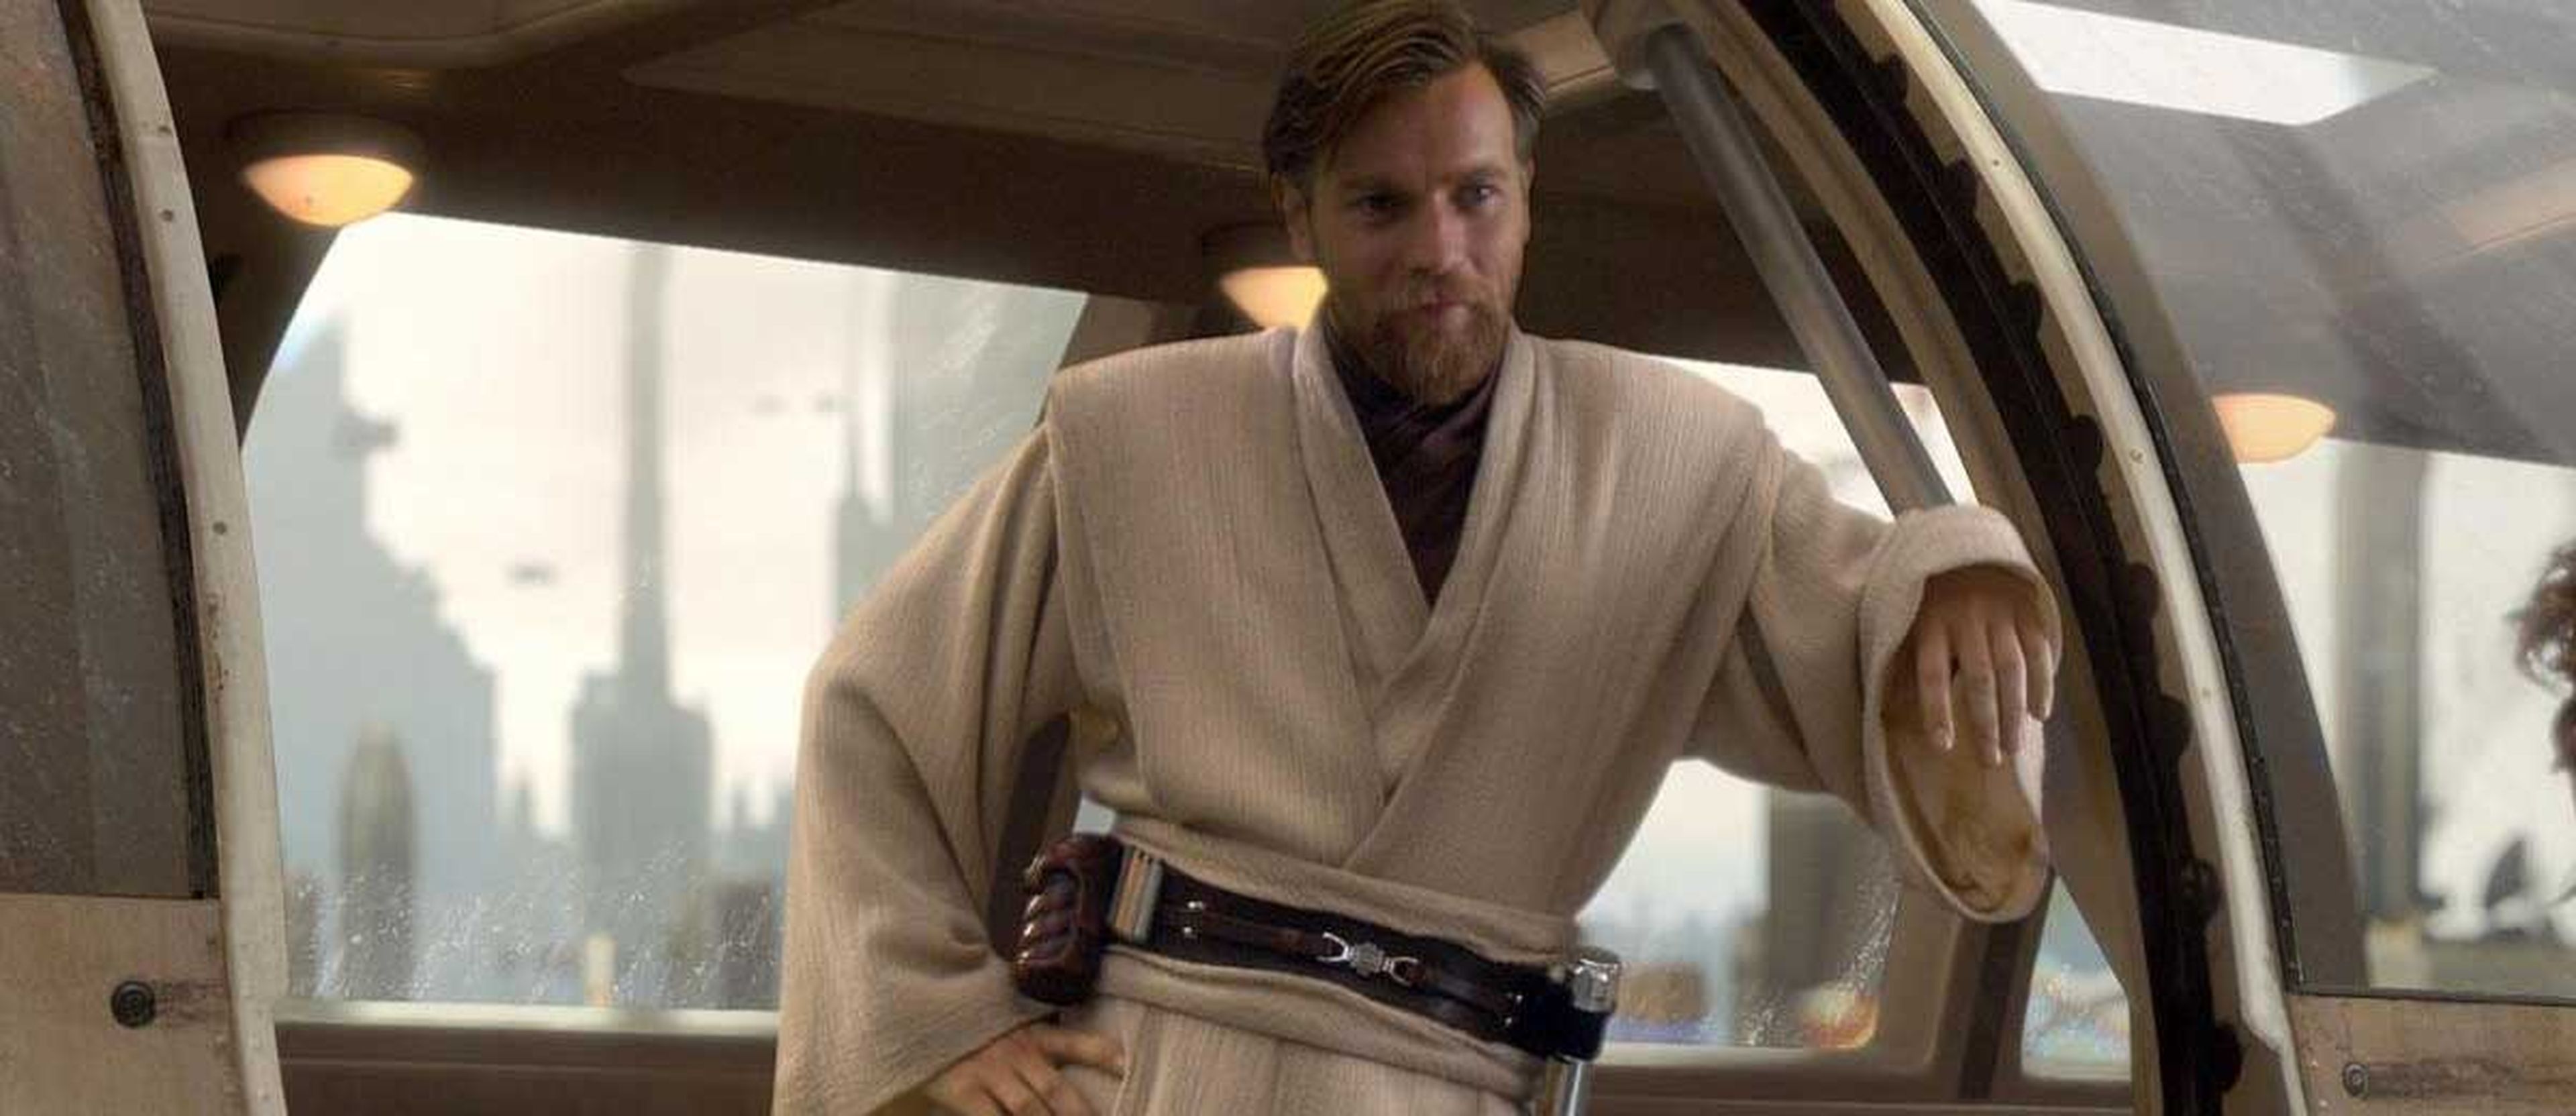 8. Obi-Wan Kenobi